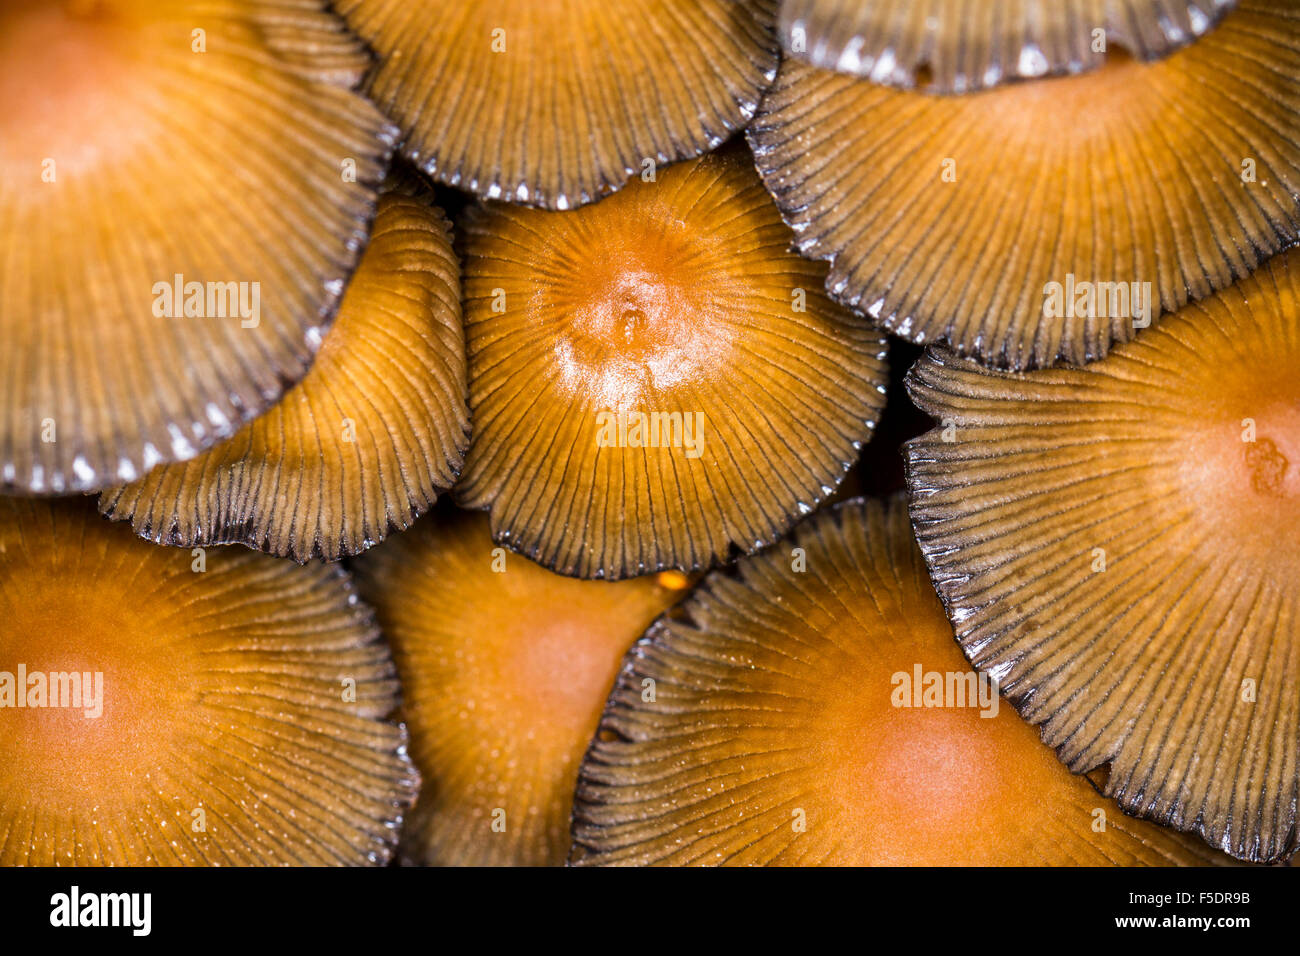 Immagine di panorama delle cime di un cluster di funghi di bosco/fungo pranzo insieme a tenuta stagna Foto Stock